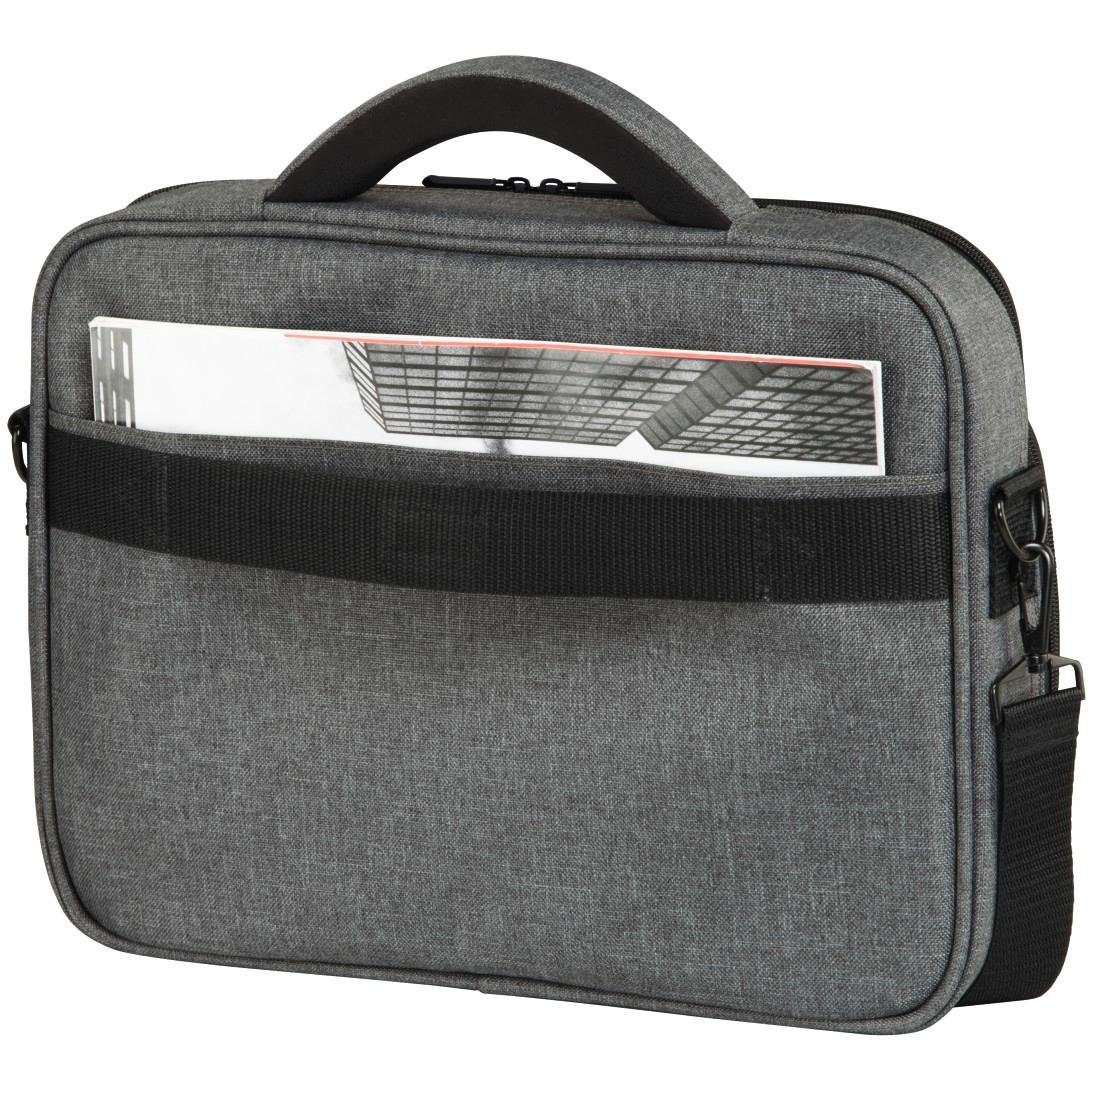 Hama Laptoptasche Laptop Tasche "Business", (17,3), cm Grau 44 bis